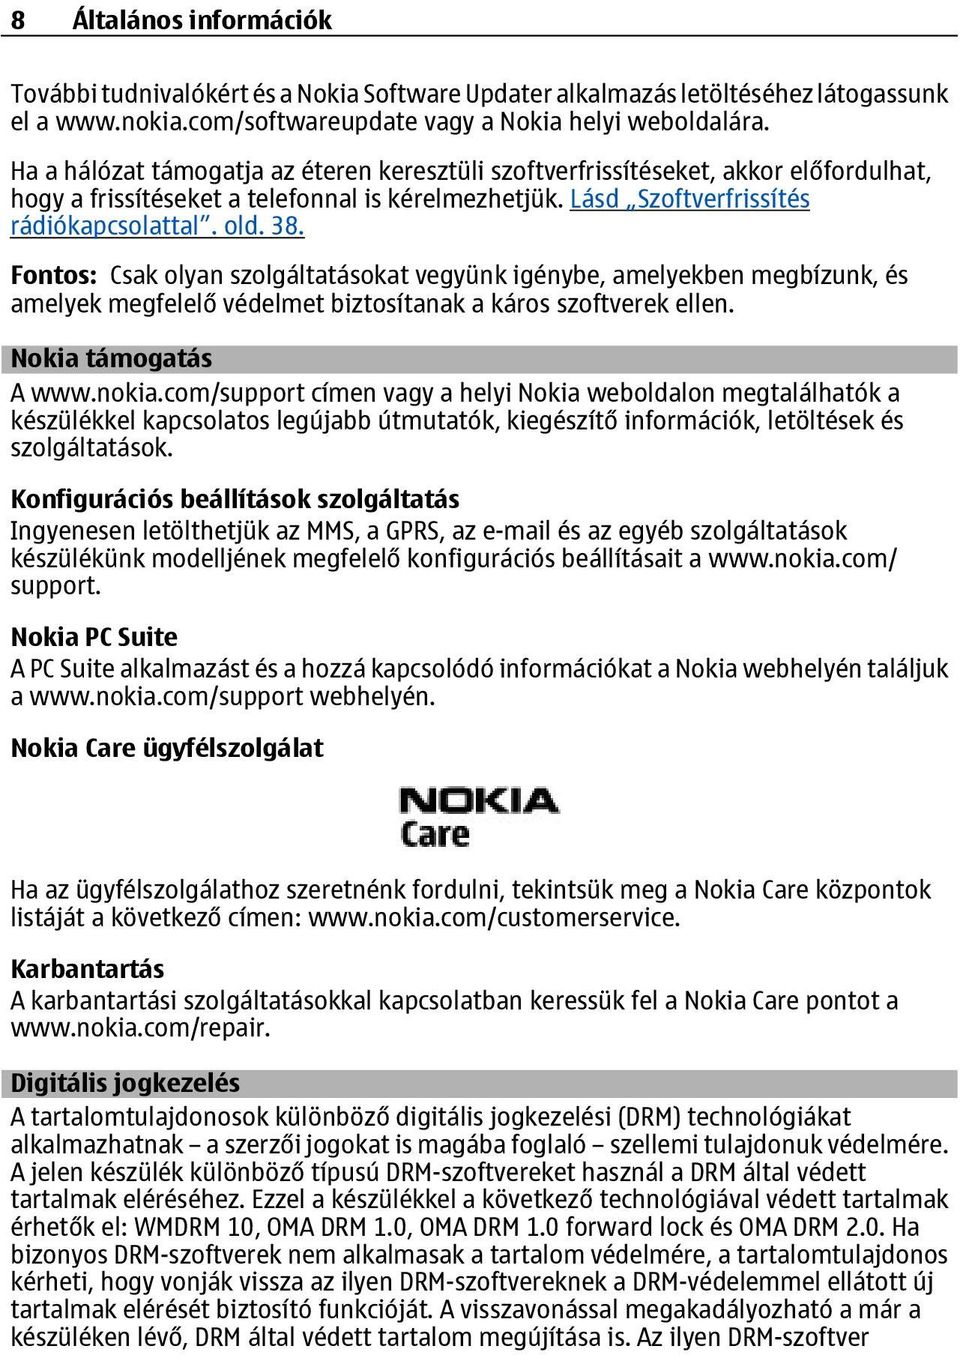 Fontos: Csak olyan szolgáltatásokat vegyünk igénybe, amelyekben megbízunk, és amelyek megfelelő védelmet biztosítanak a káros szoftverek ellen. Nokia támogatás A www.nokia.